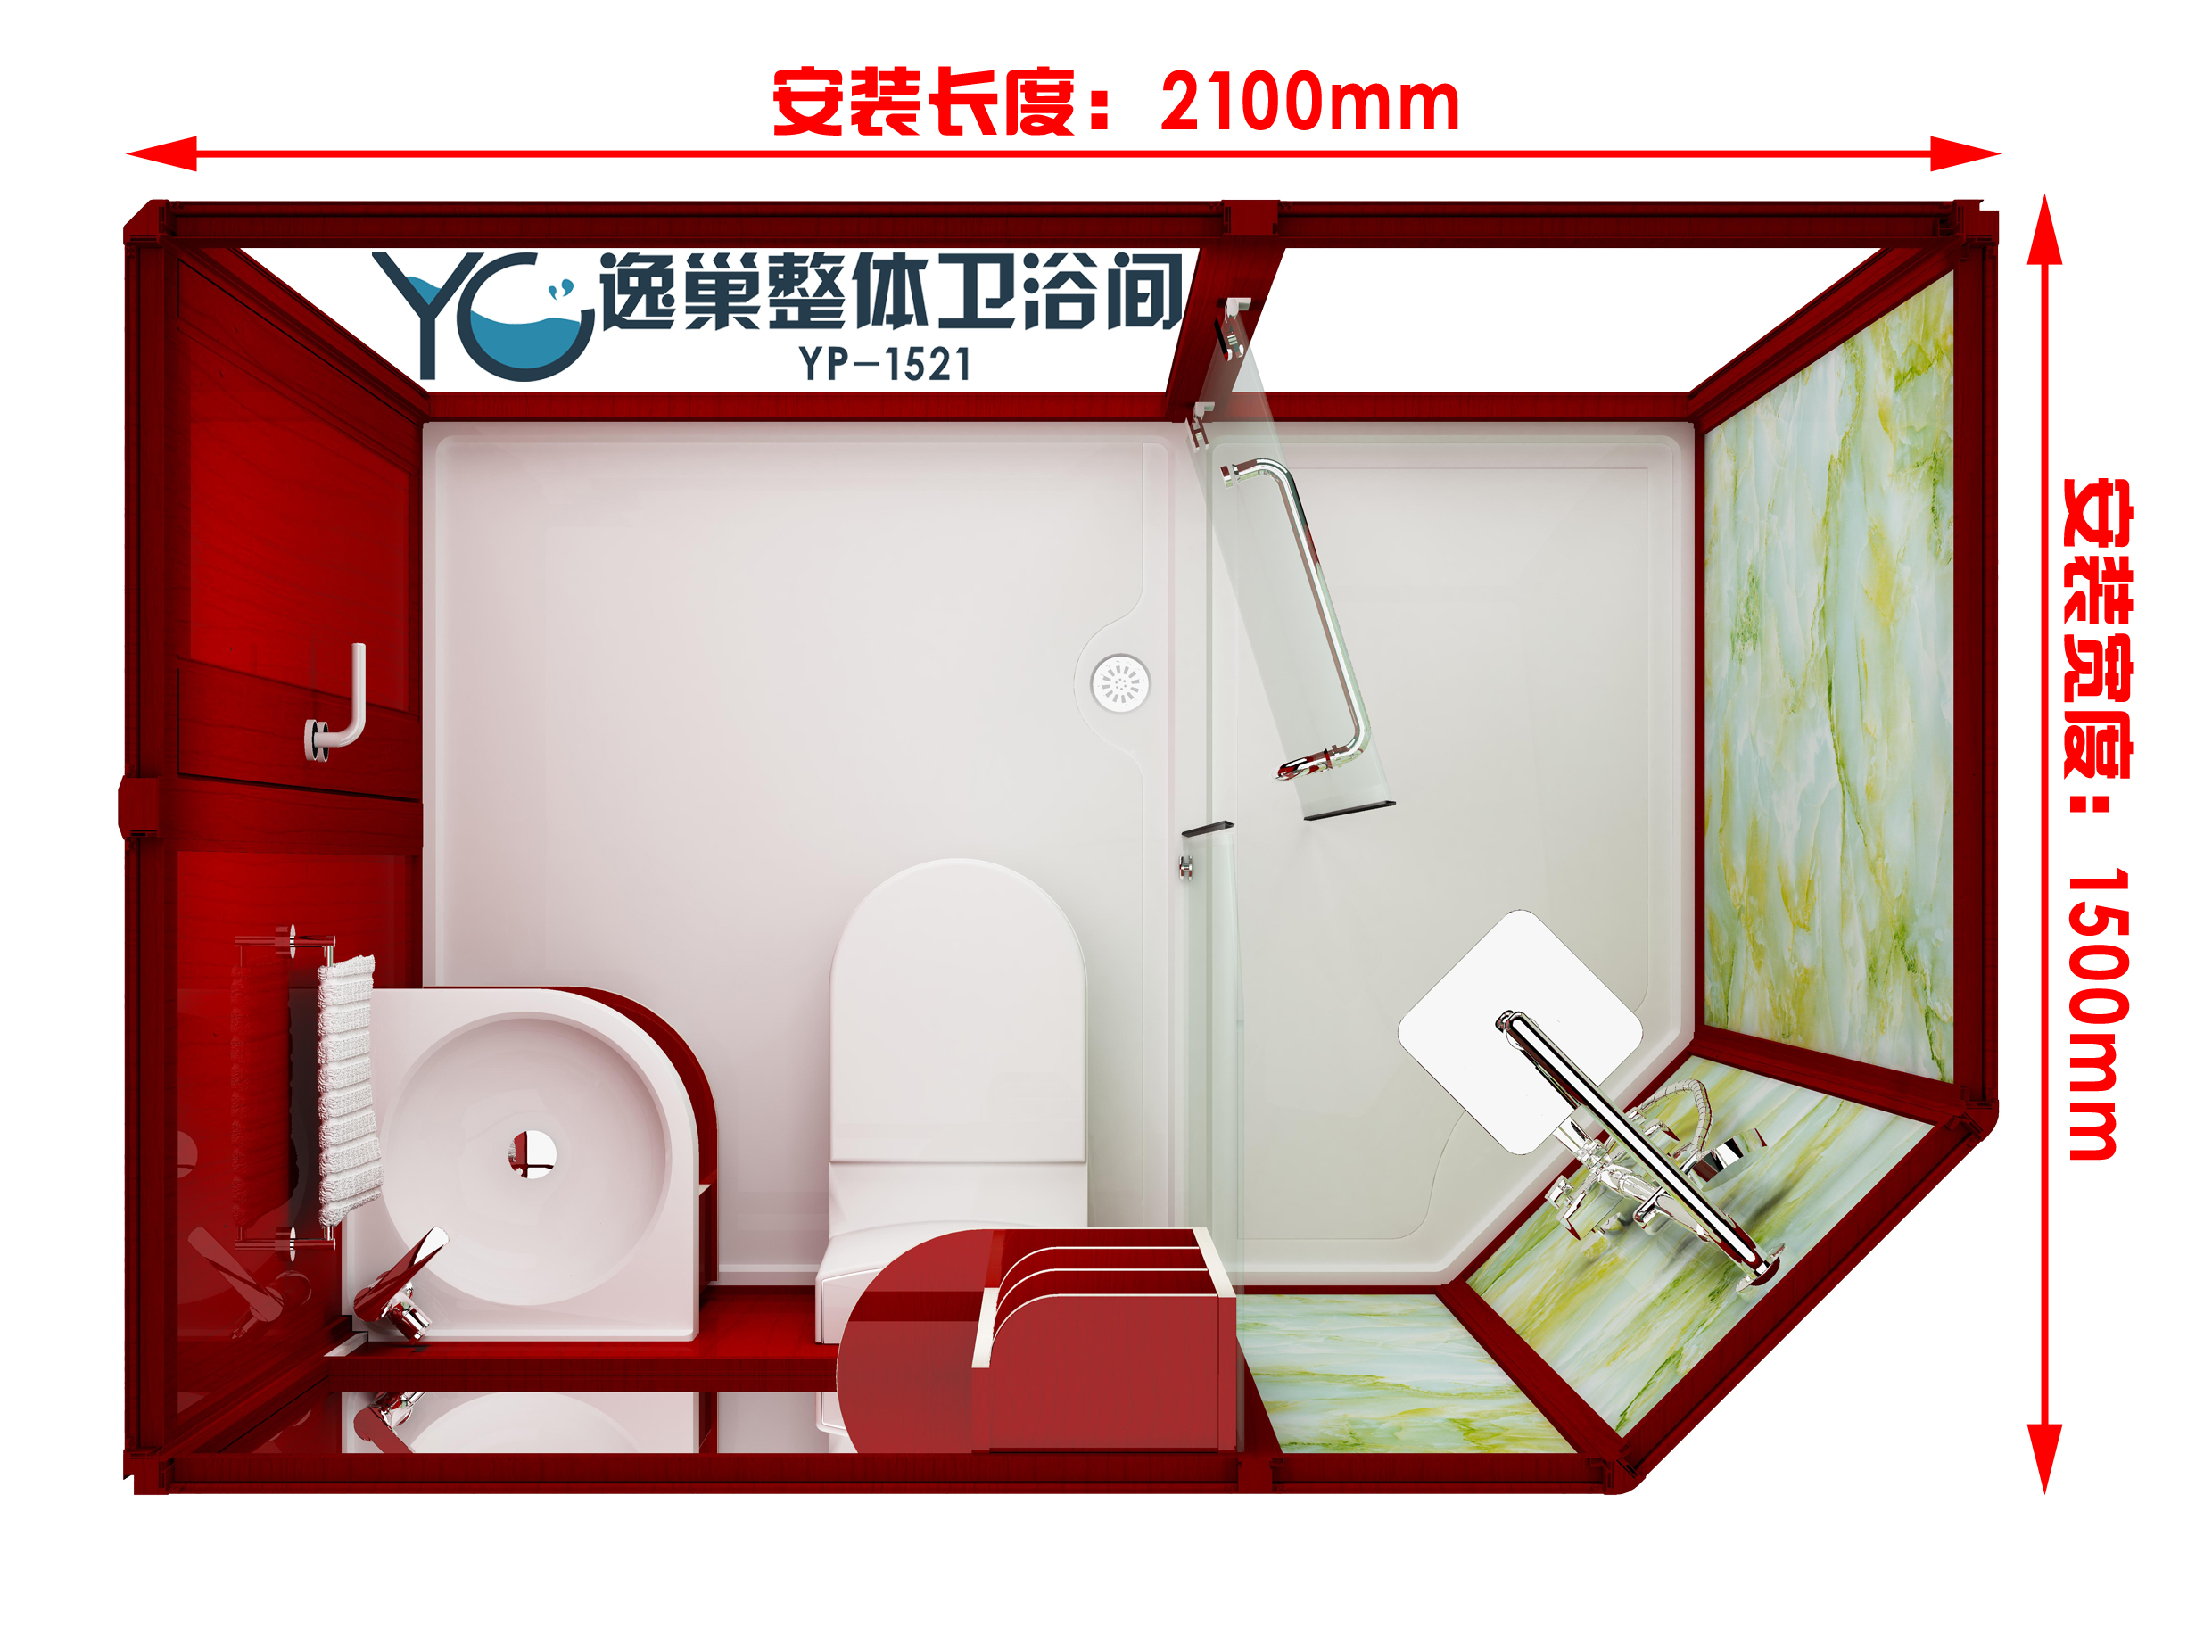 酒店宾馆整体卫生间一体式集成独立卫浴室洗手间移动厕所淋浴房图片